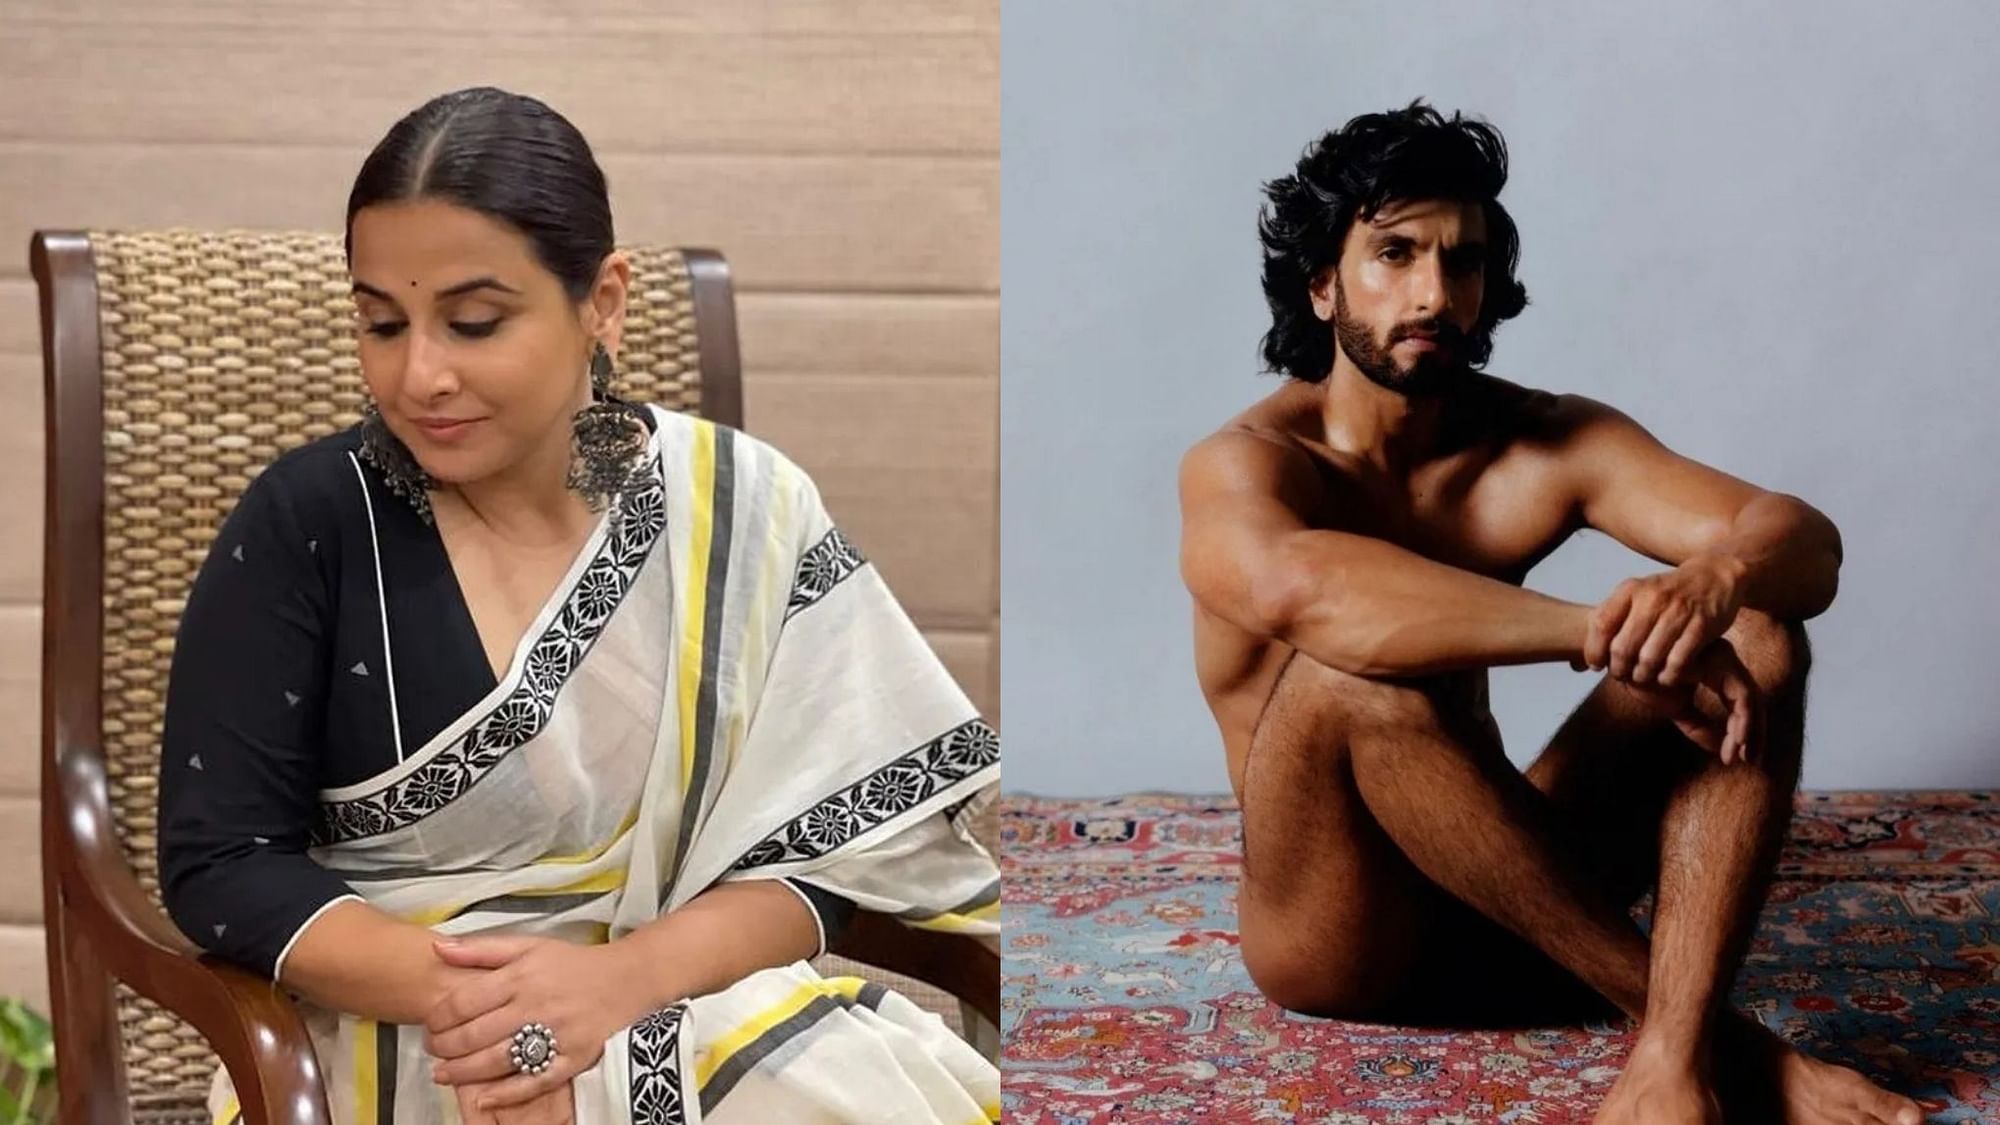 Vidya Balan Porn Video - Vidya Balan Speaks in Support of Ranveer Singh's Nude Photoshoot